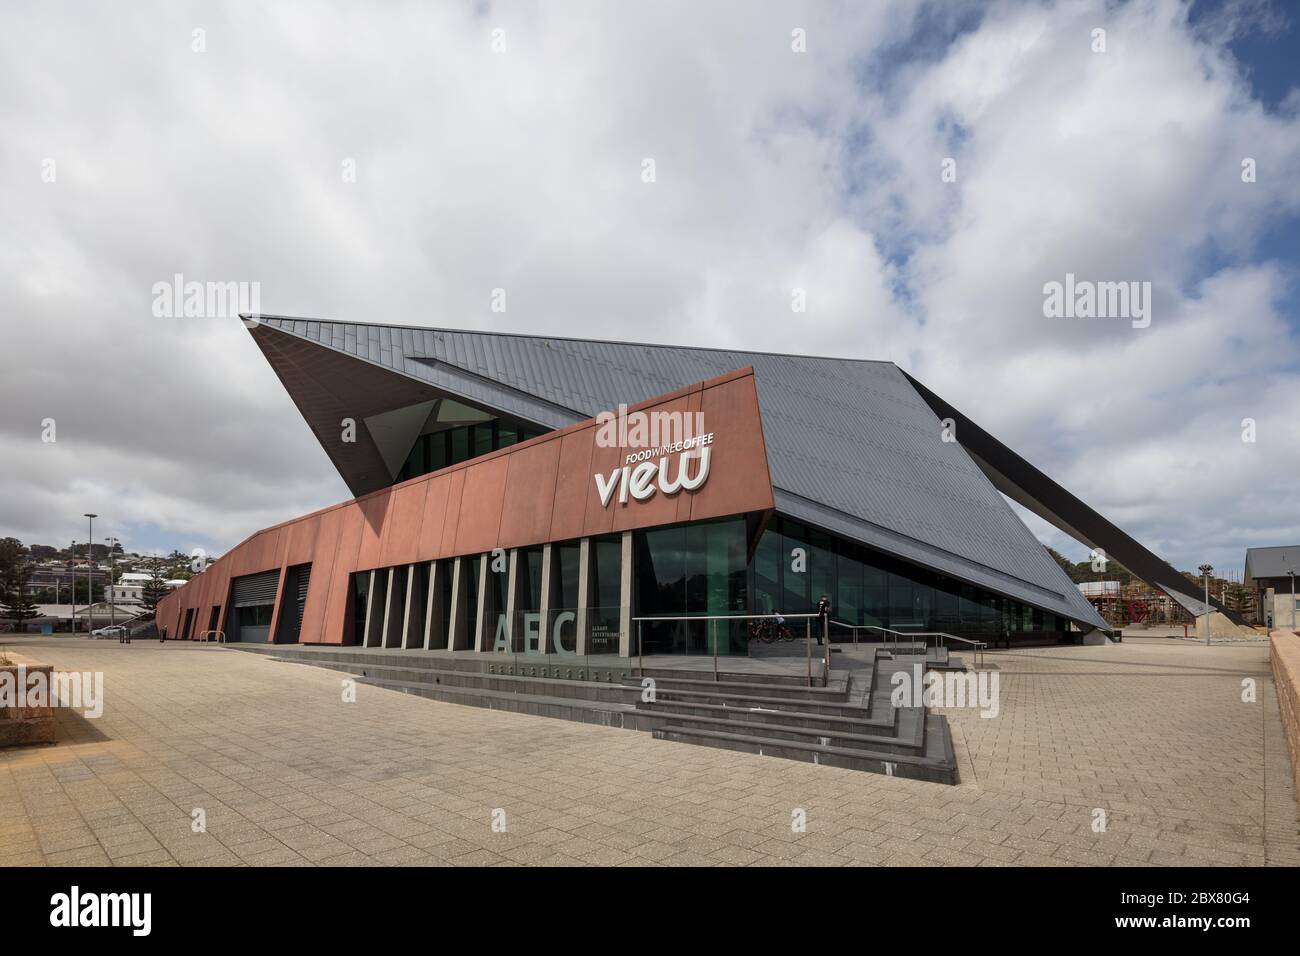 Albany Western Australia 10. November 2019 : Blick auf die moderne Architektur, die das Albany Entertainment Center in Western Australia umfasst Stockfoto